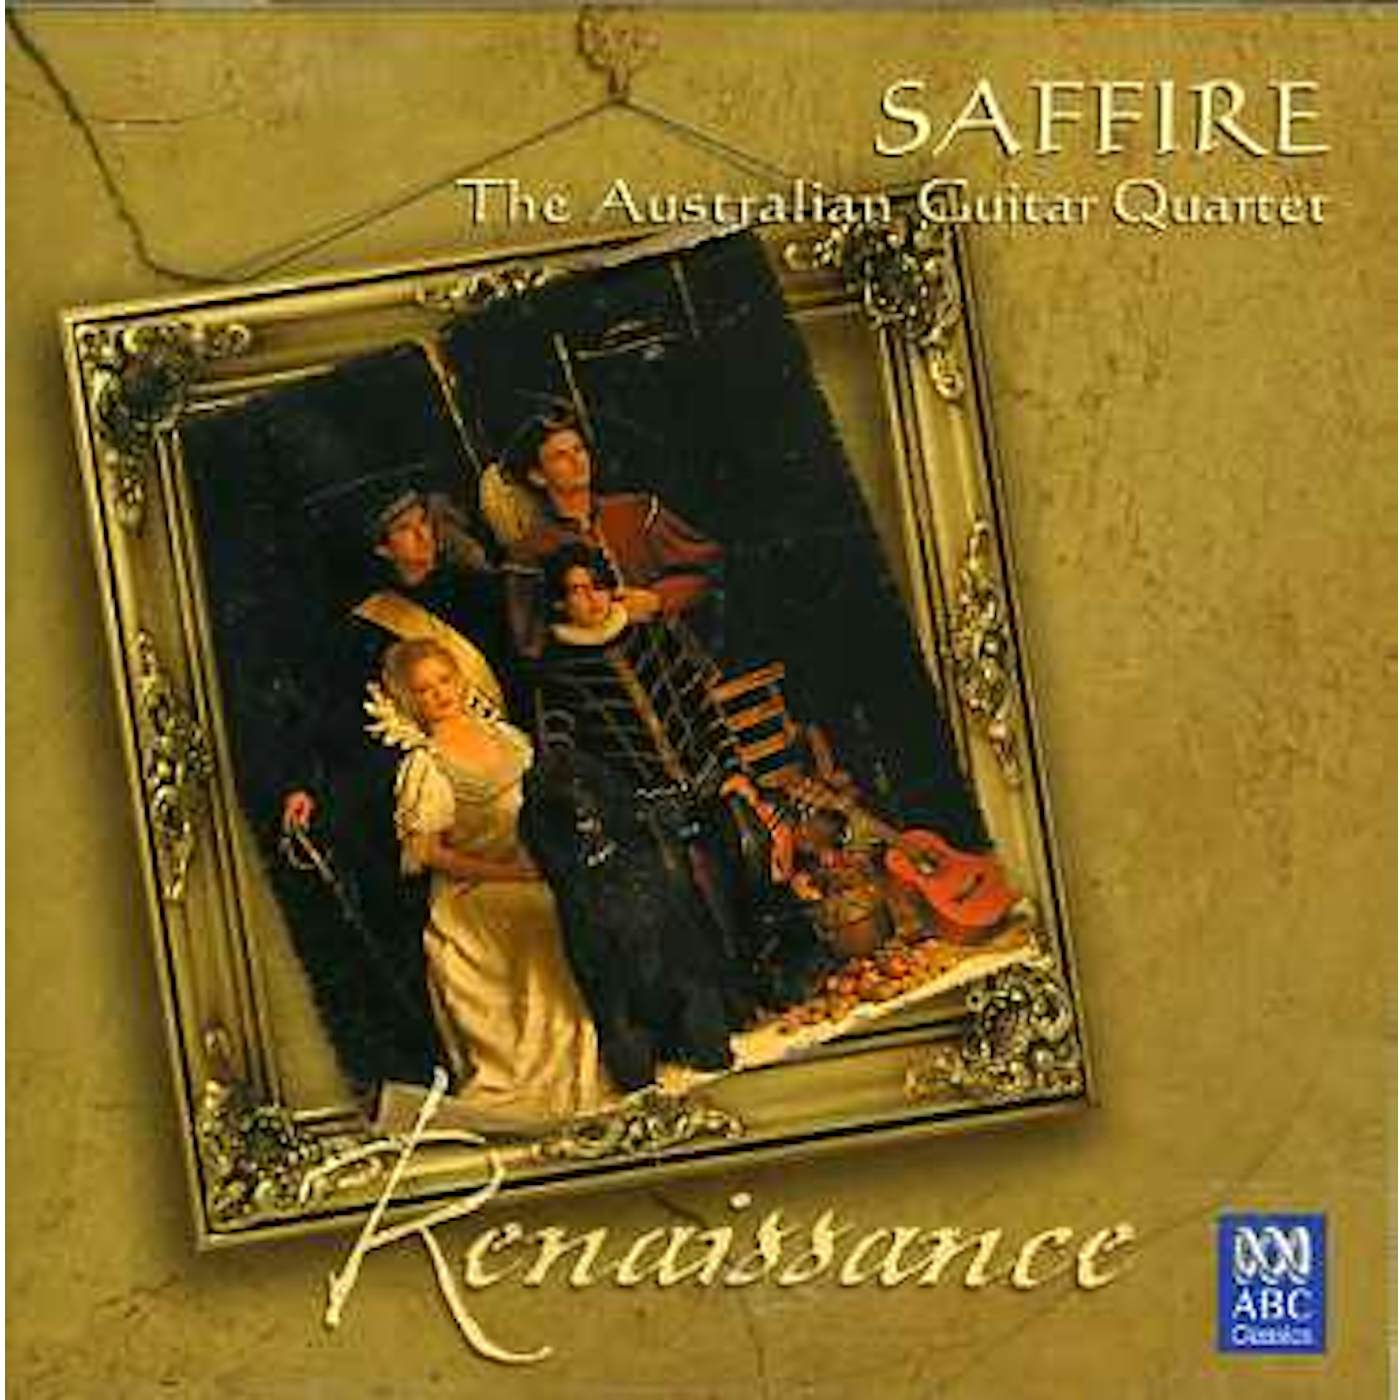 Saffire RENAISSANCE CD